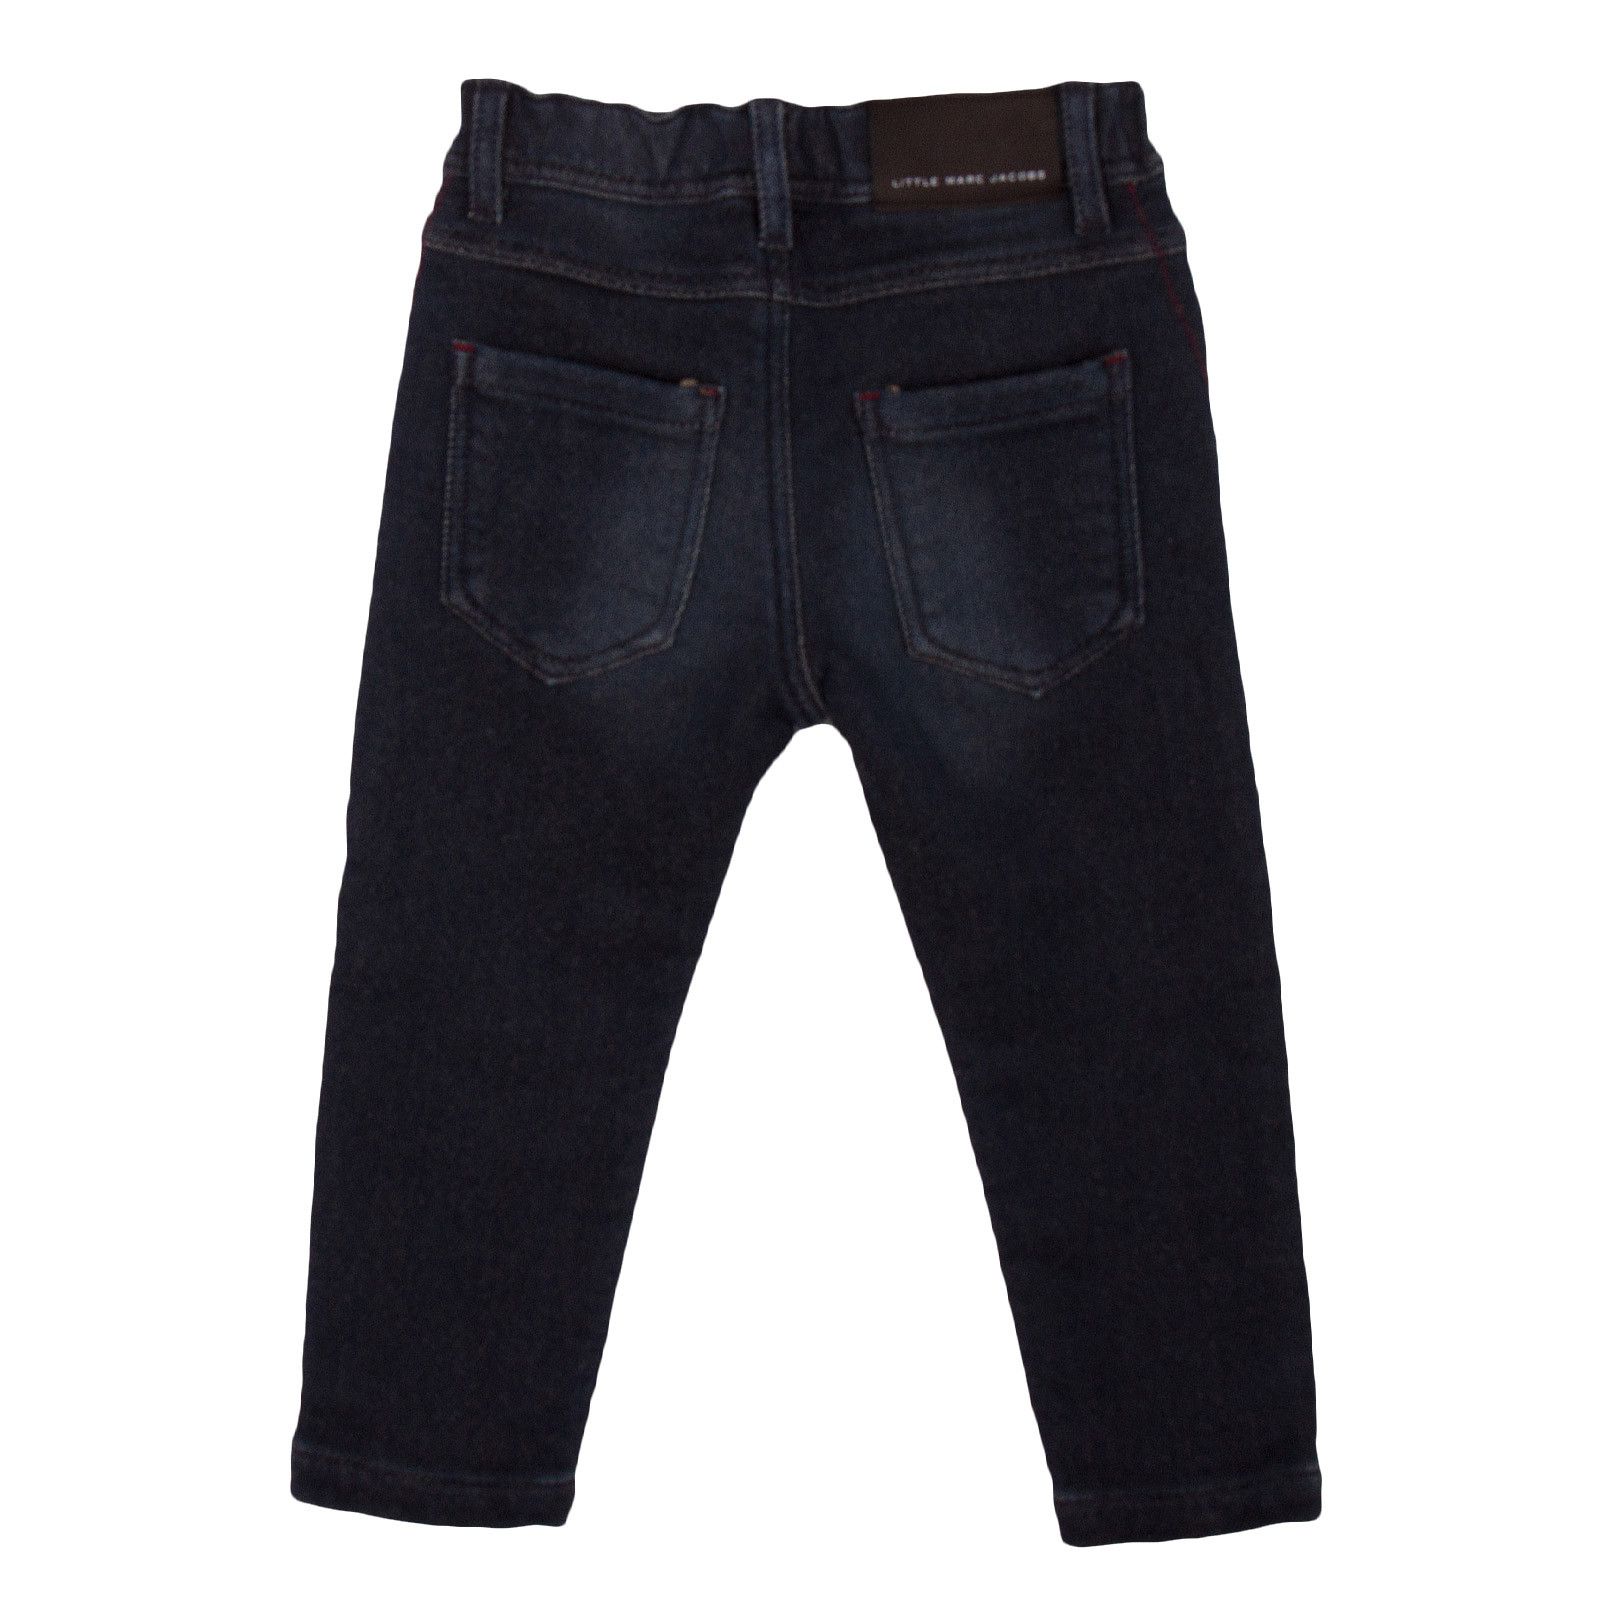 Boys Blue Demin Cotton Jeans - CÉMAROSE | Children's Fashion Store - 2